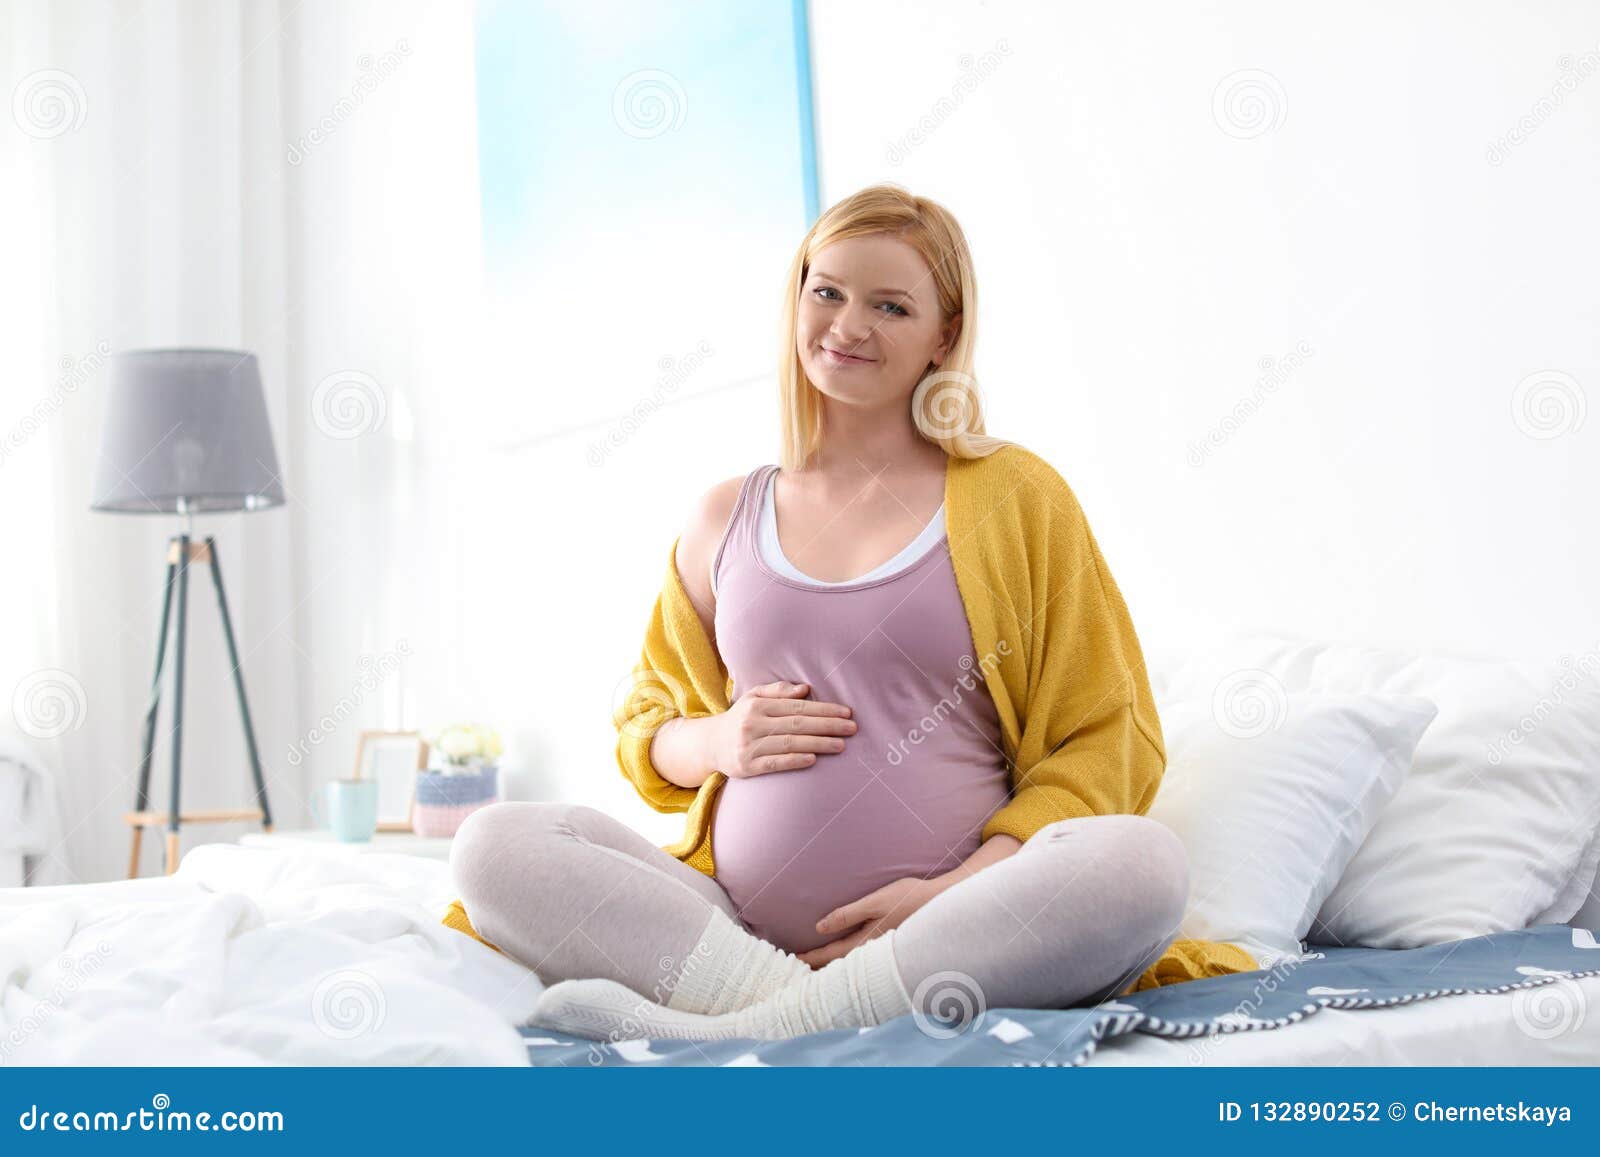 孕妇坐在沙发上休息-蓝牛仔影像-中国原创广告影像素材